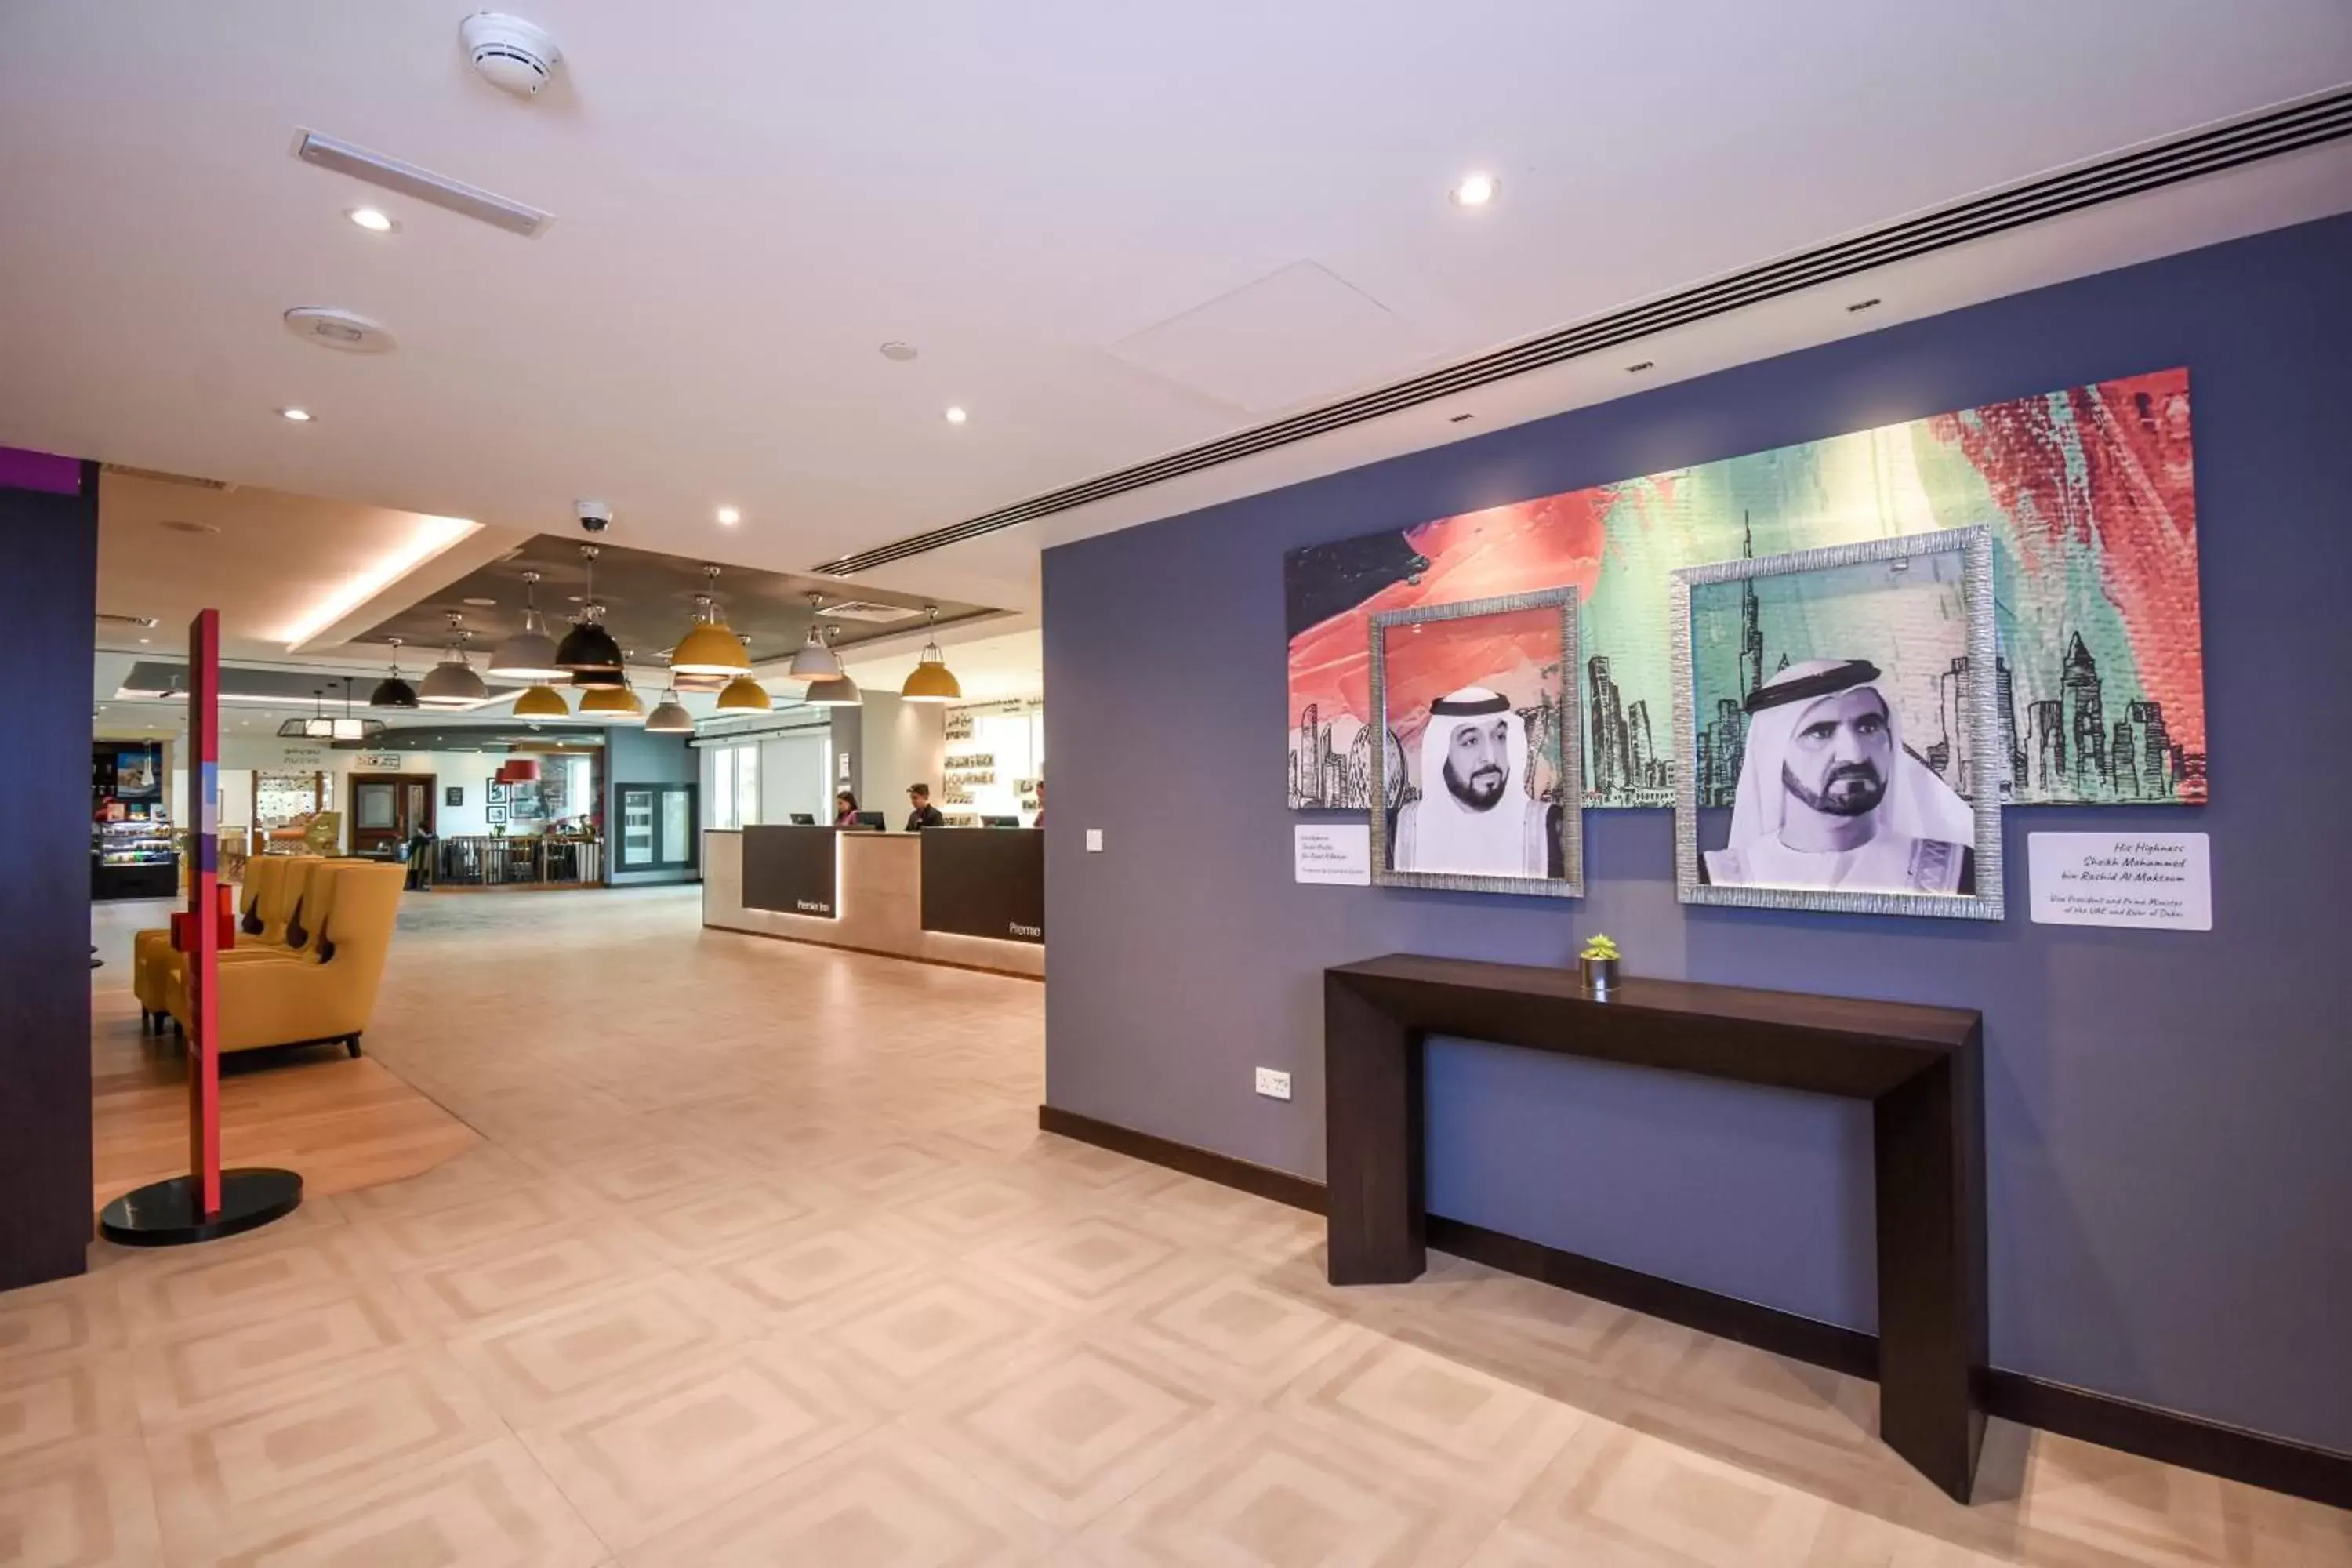 Lobby or reception, Lobby/Reception in Premier Inn Dubai Investments Park